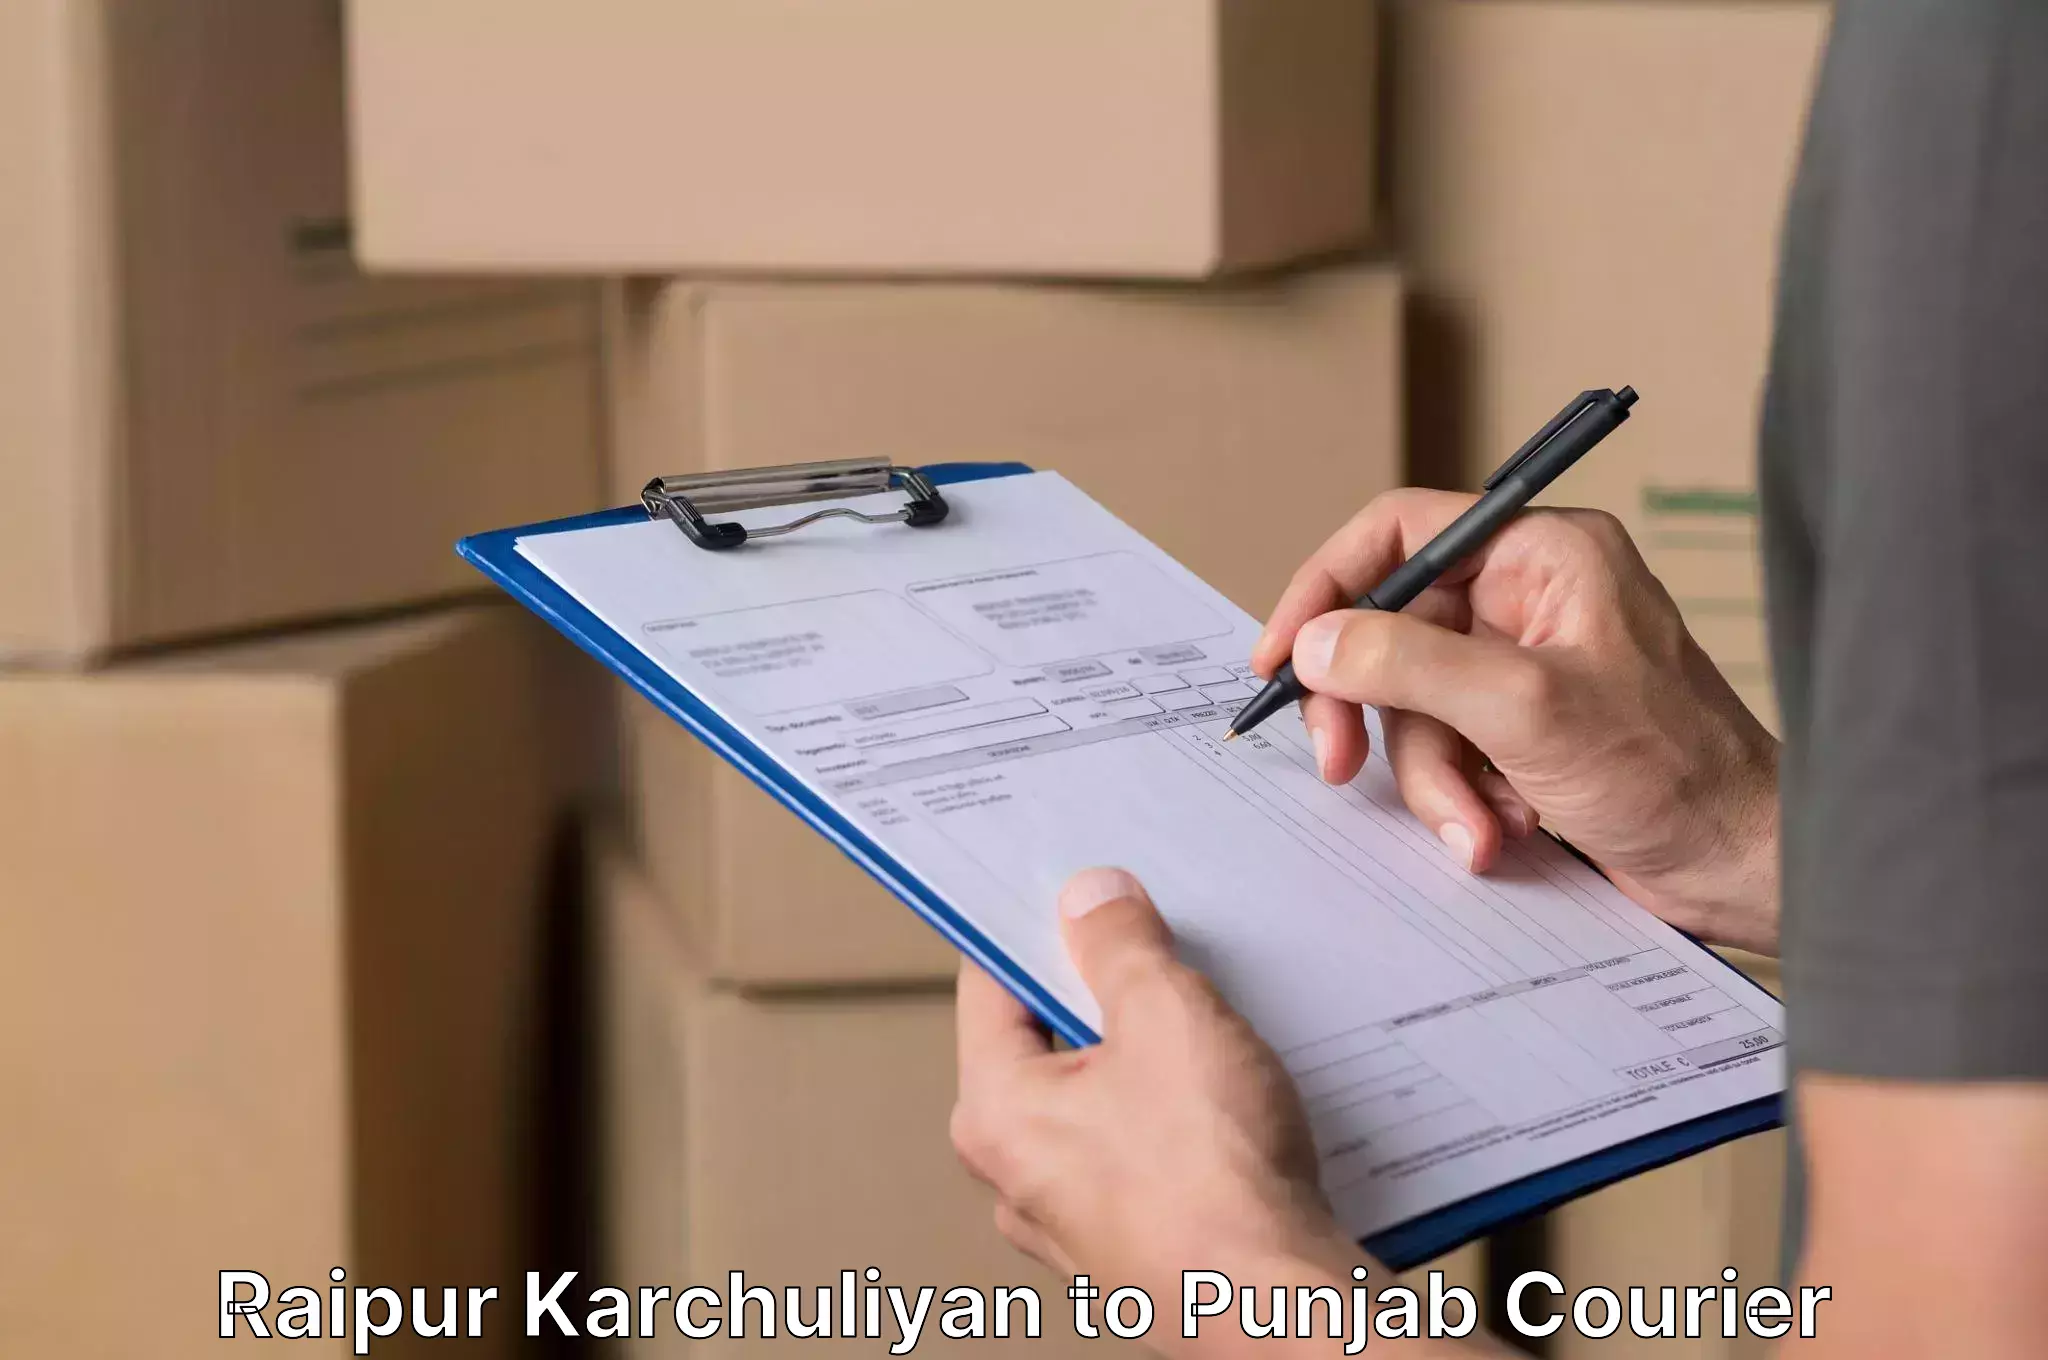 Furniture transport professionals Raipur Karchuliyan to Punjab